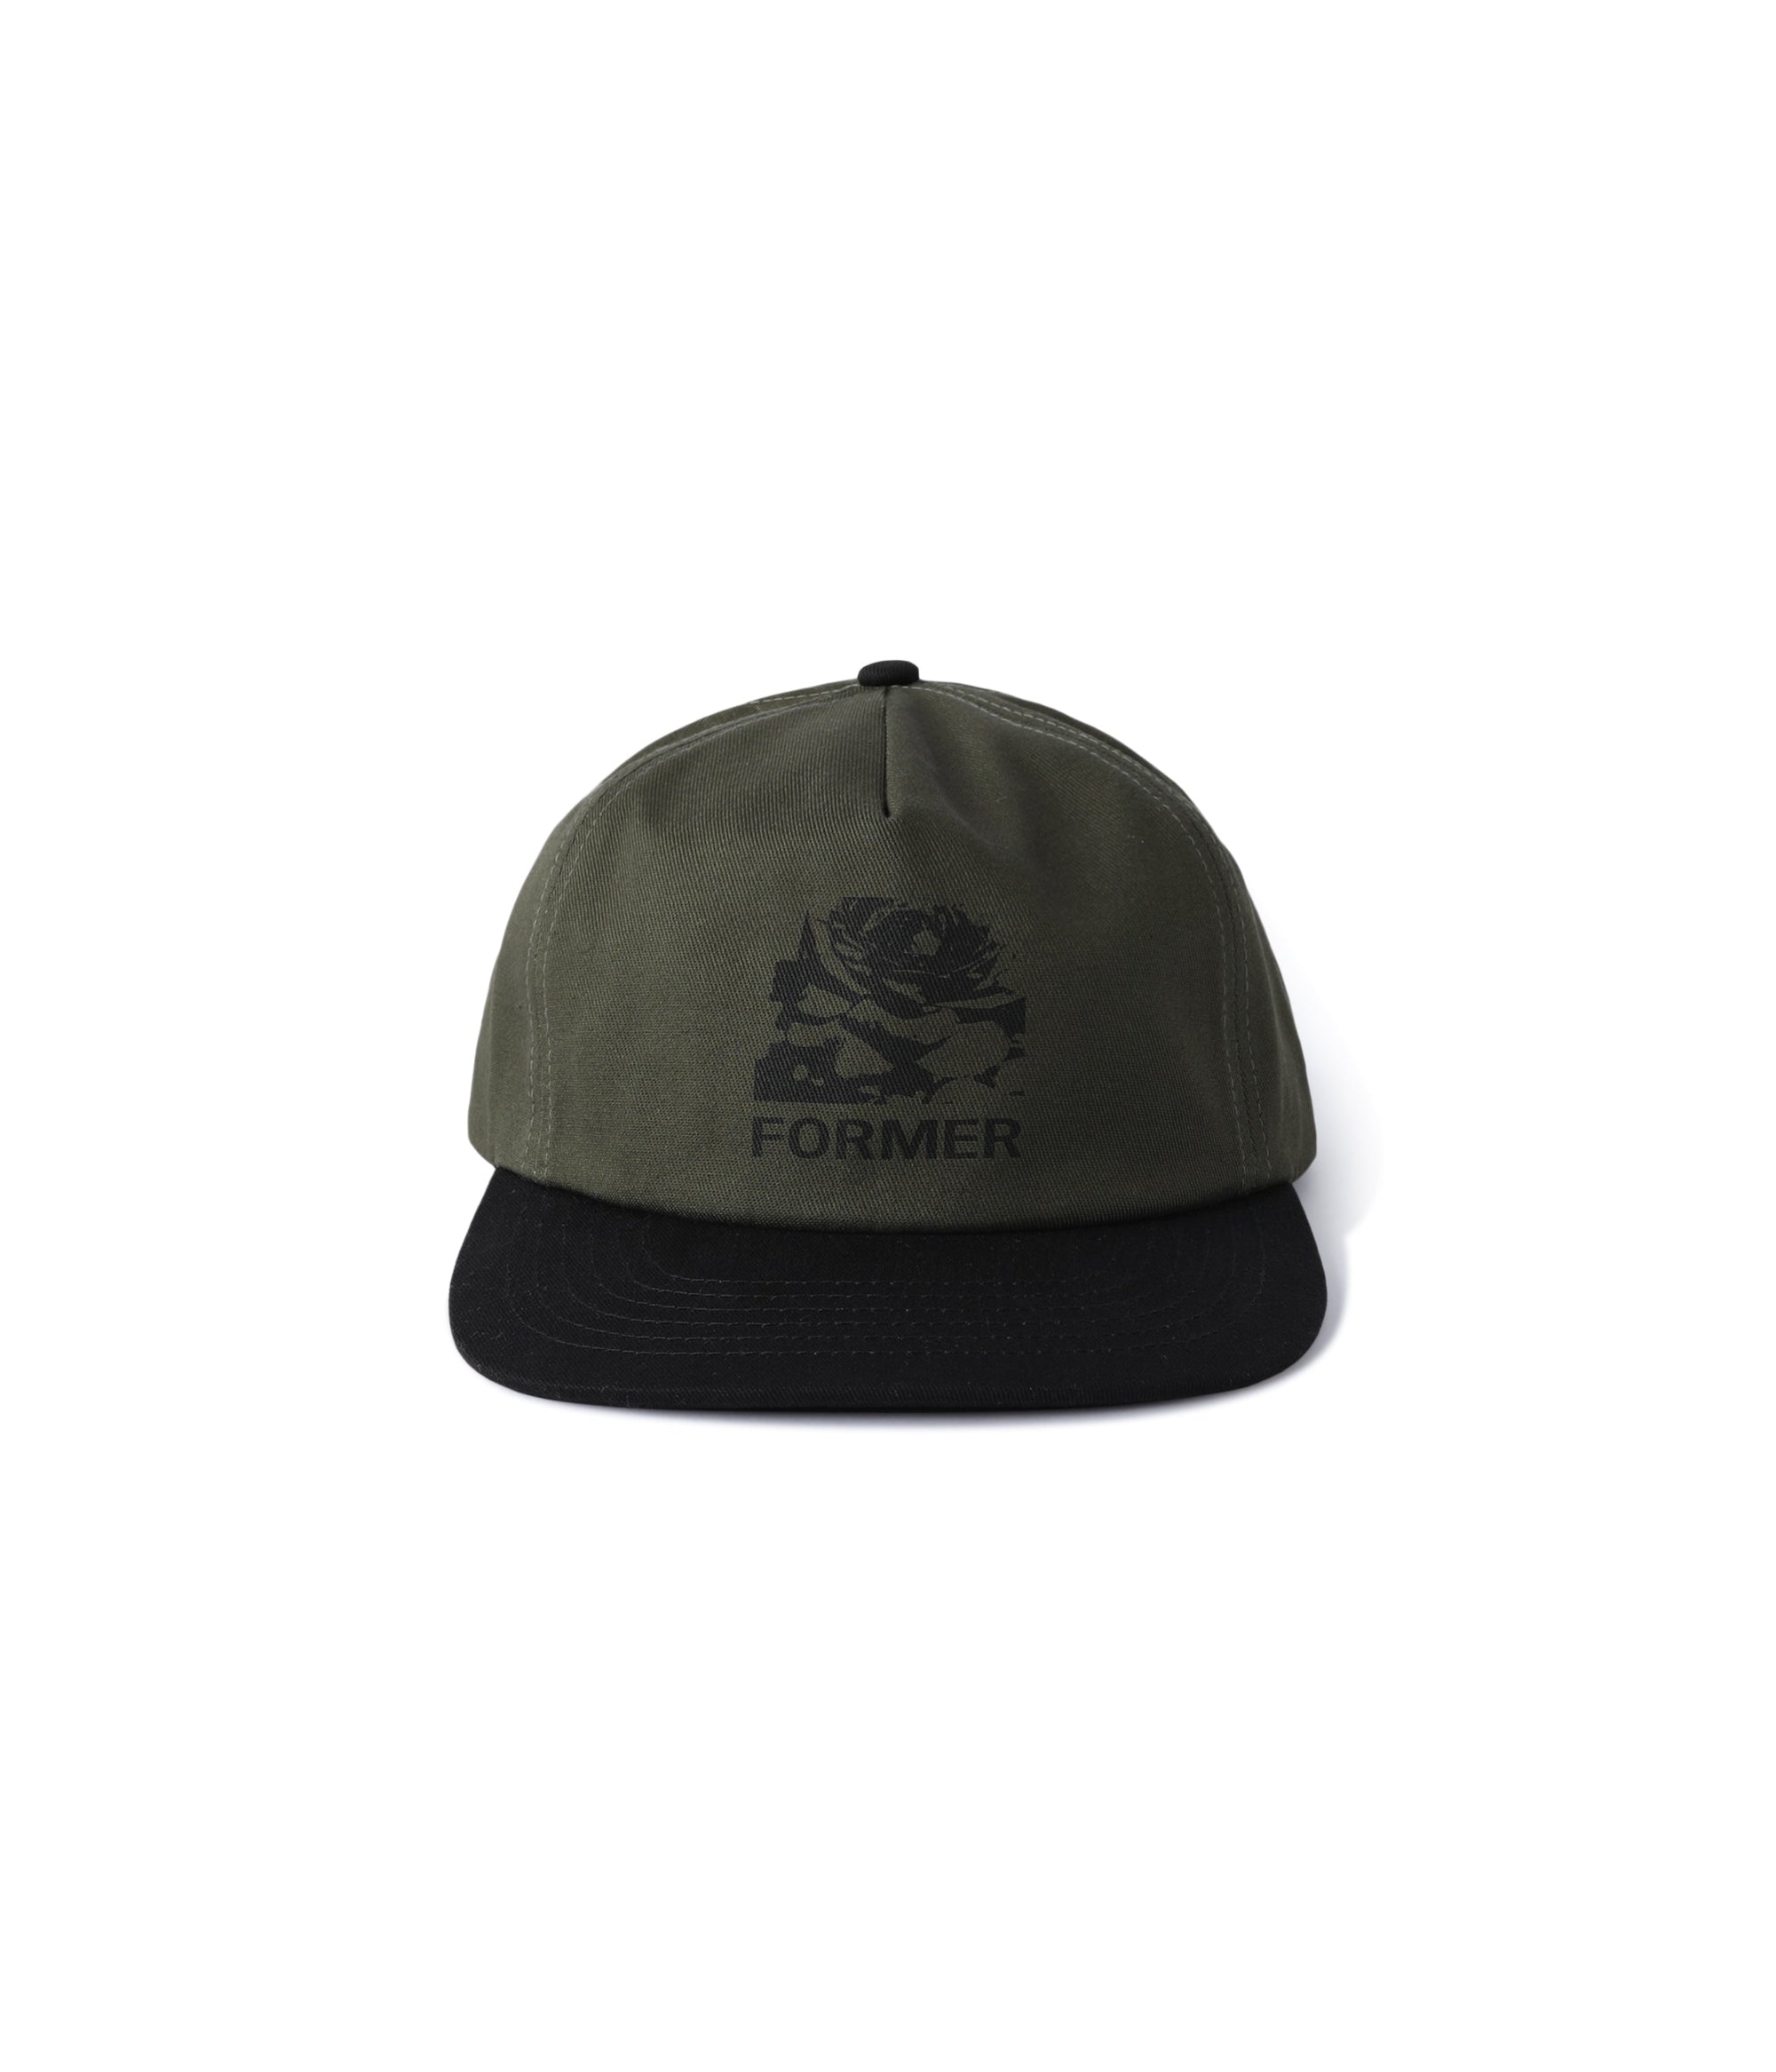 Former Merchandise - ROSE CRUX CAP - OLIVE BLACK